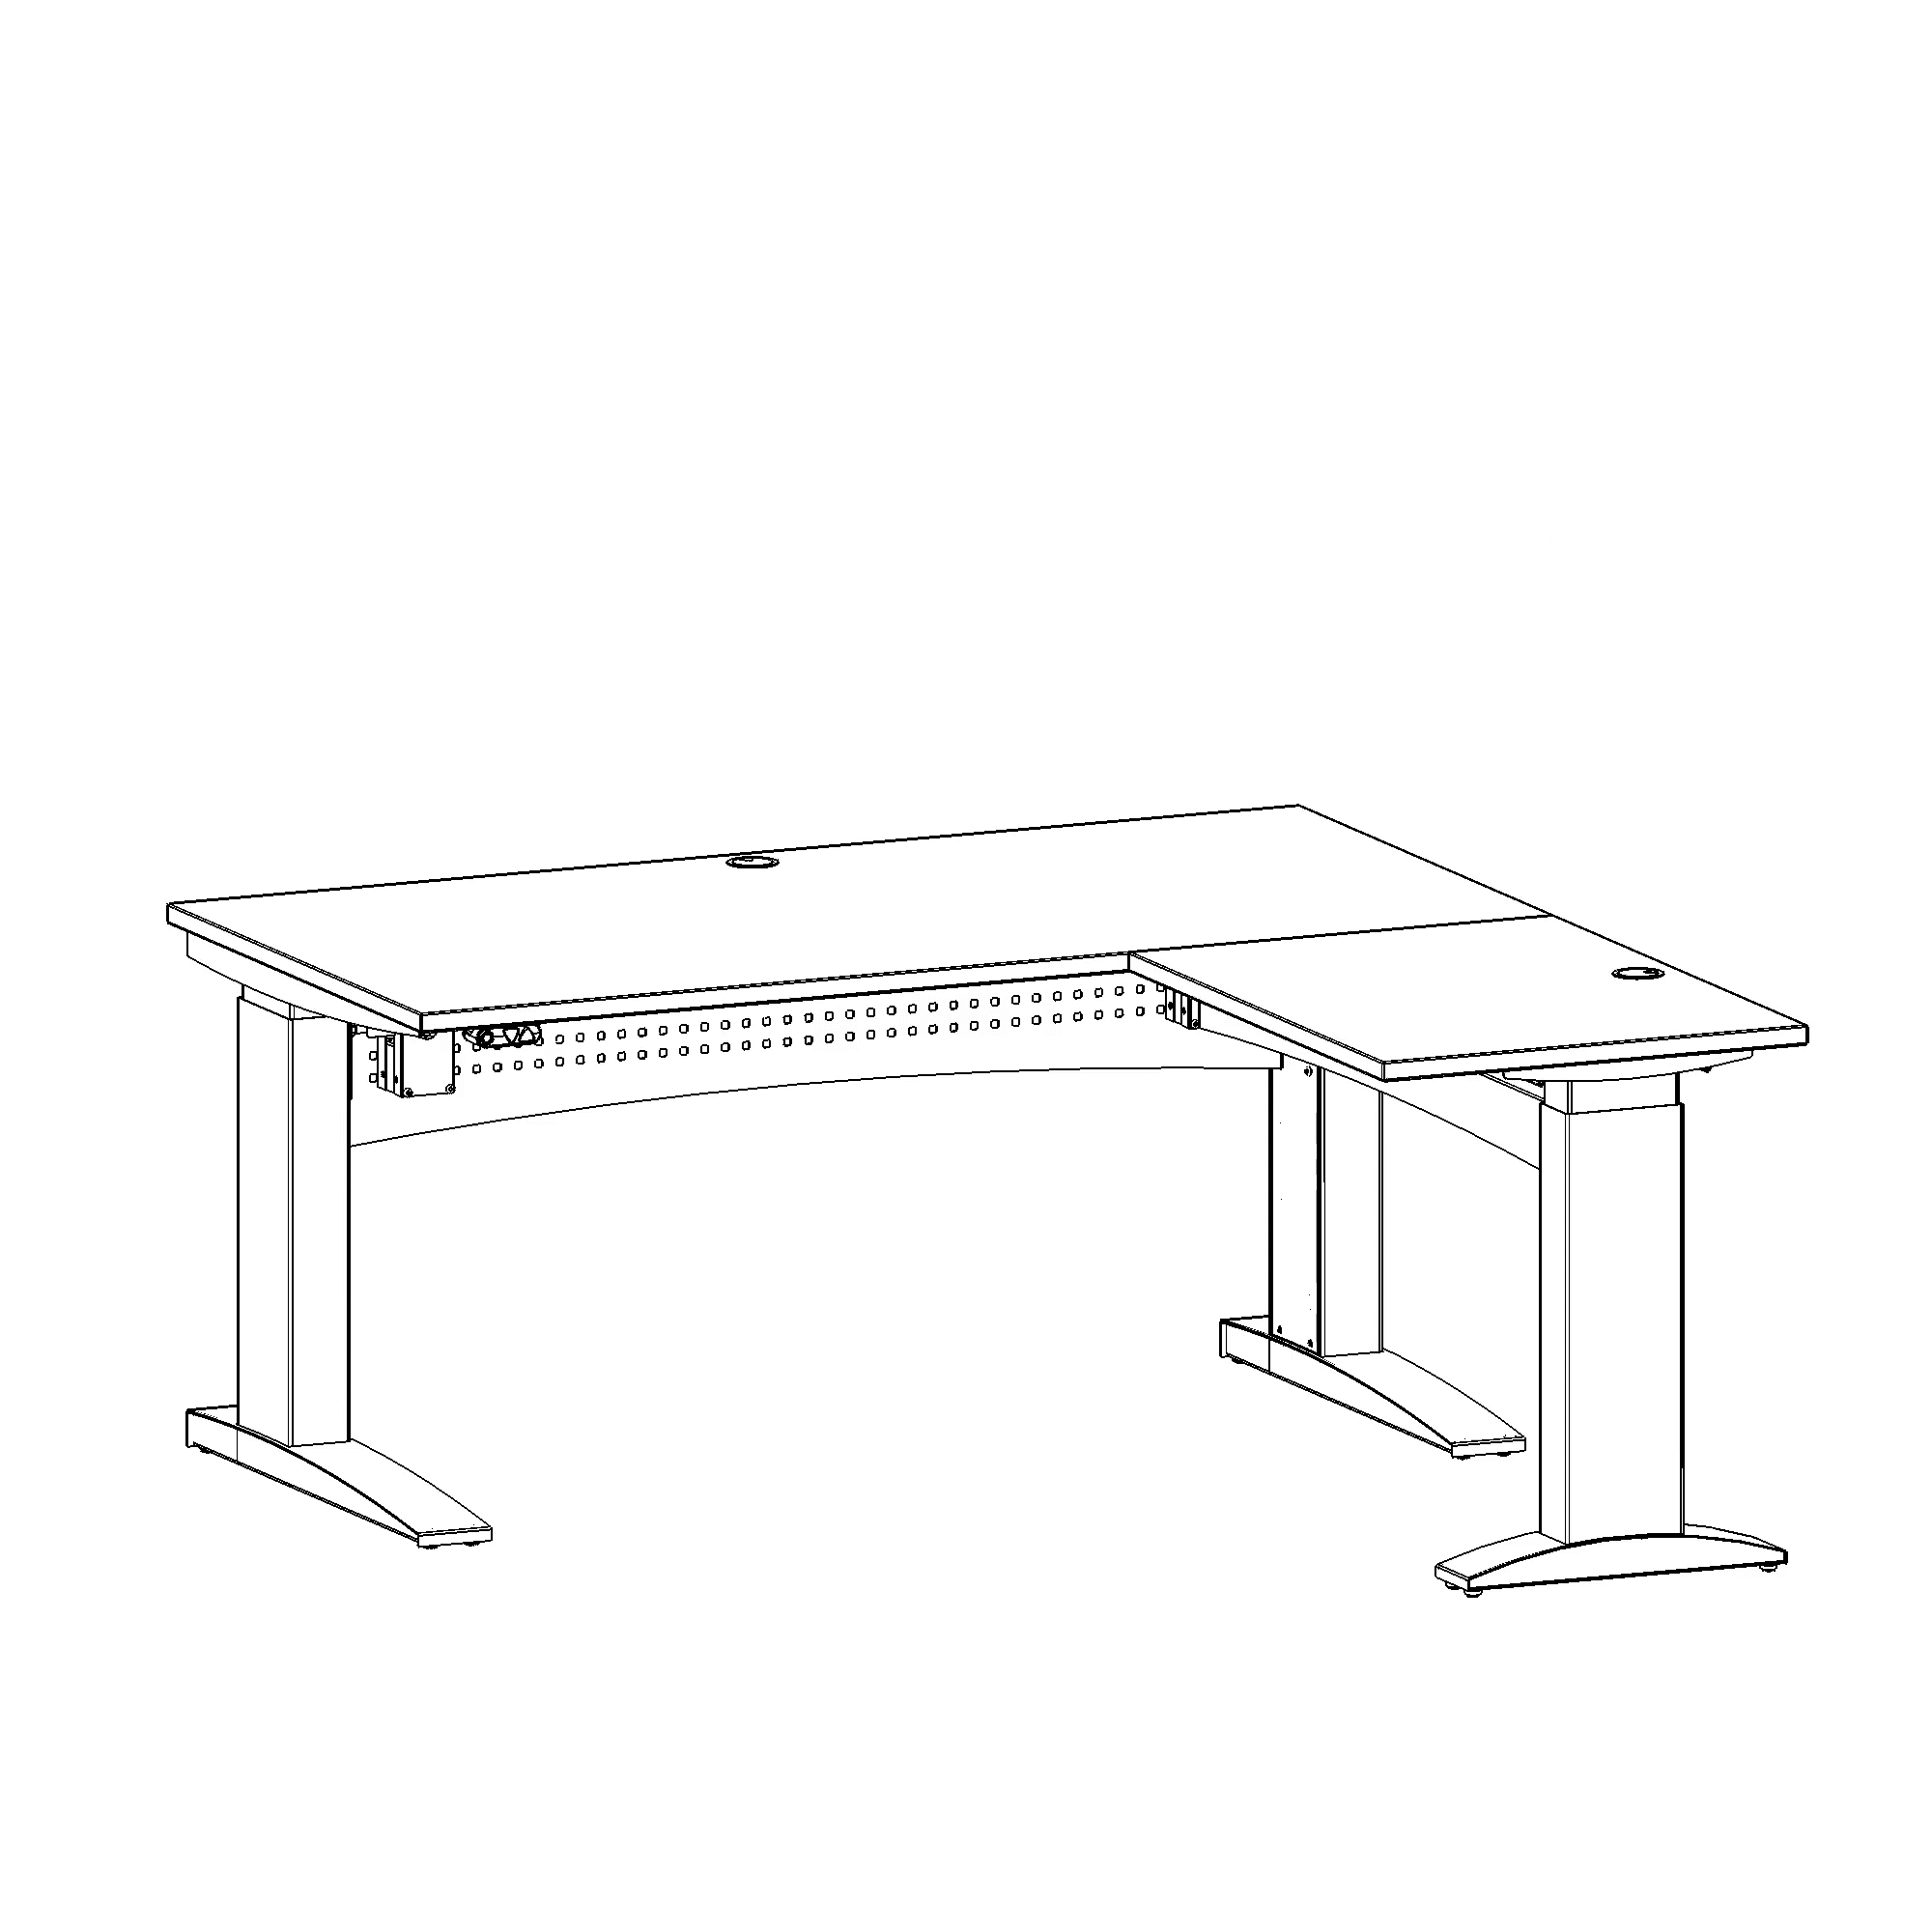 Elektrisch verstelbaar bureau | 160x160 cm | Walnoot met zwart frame